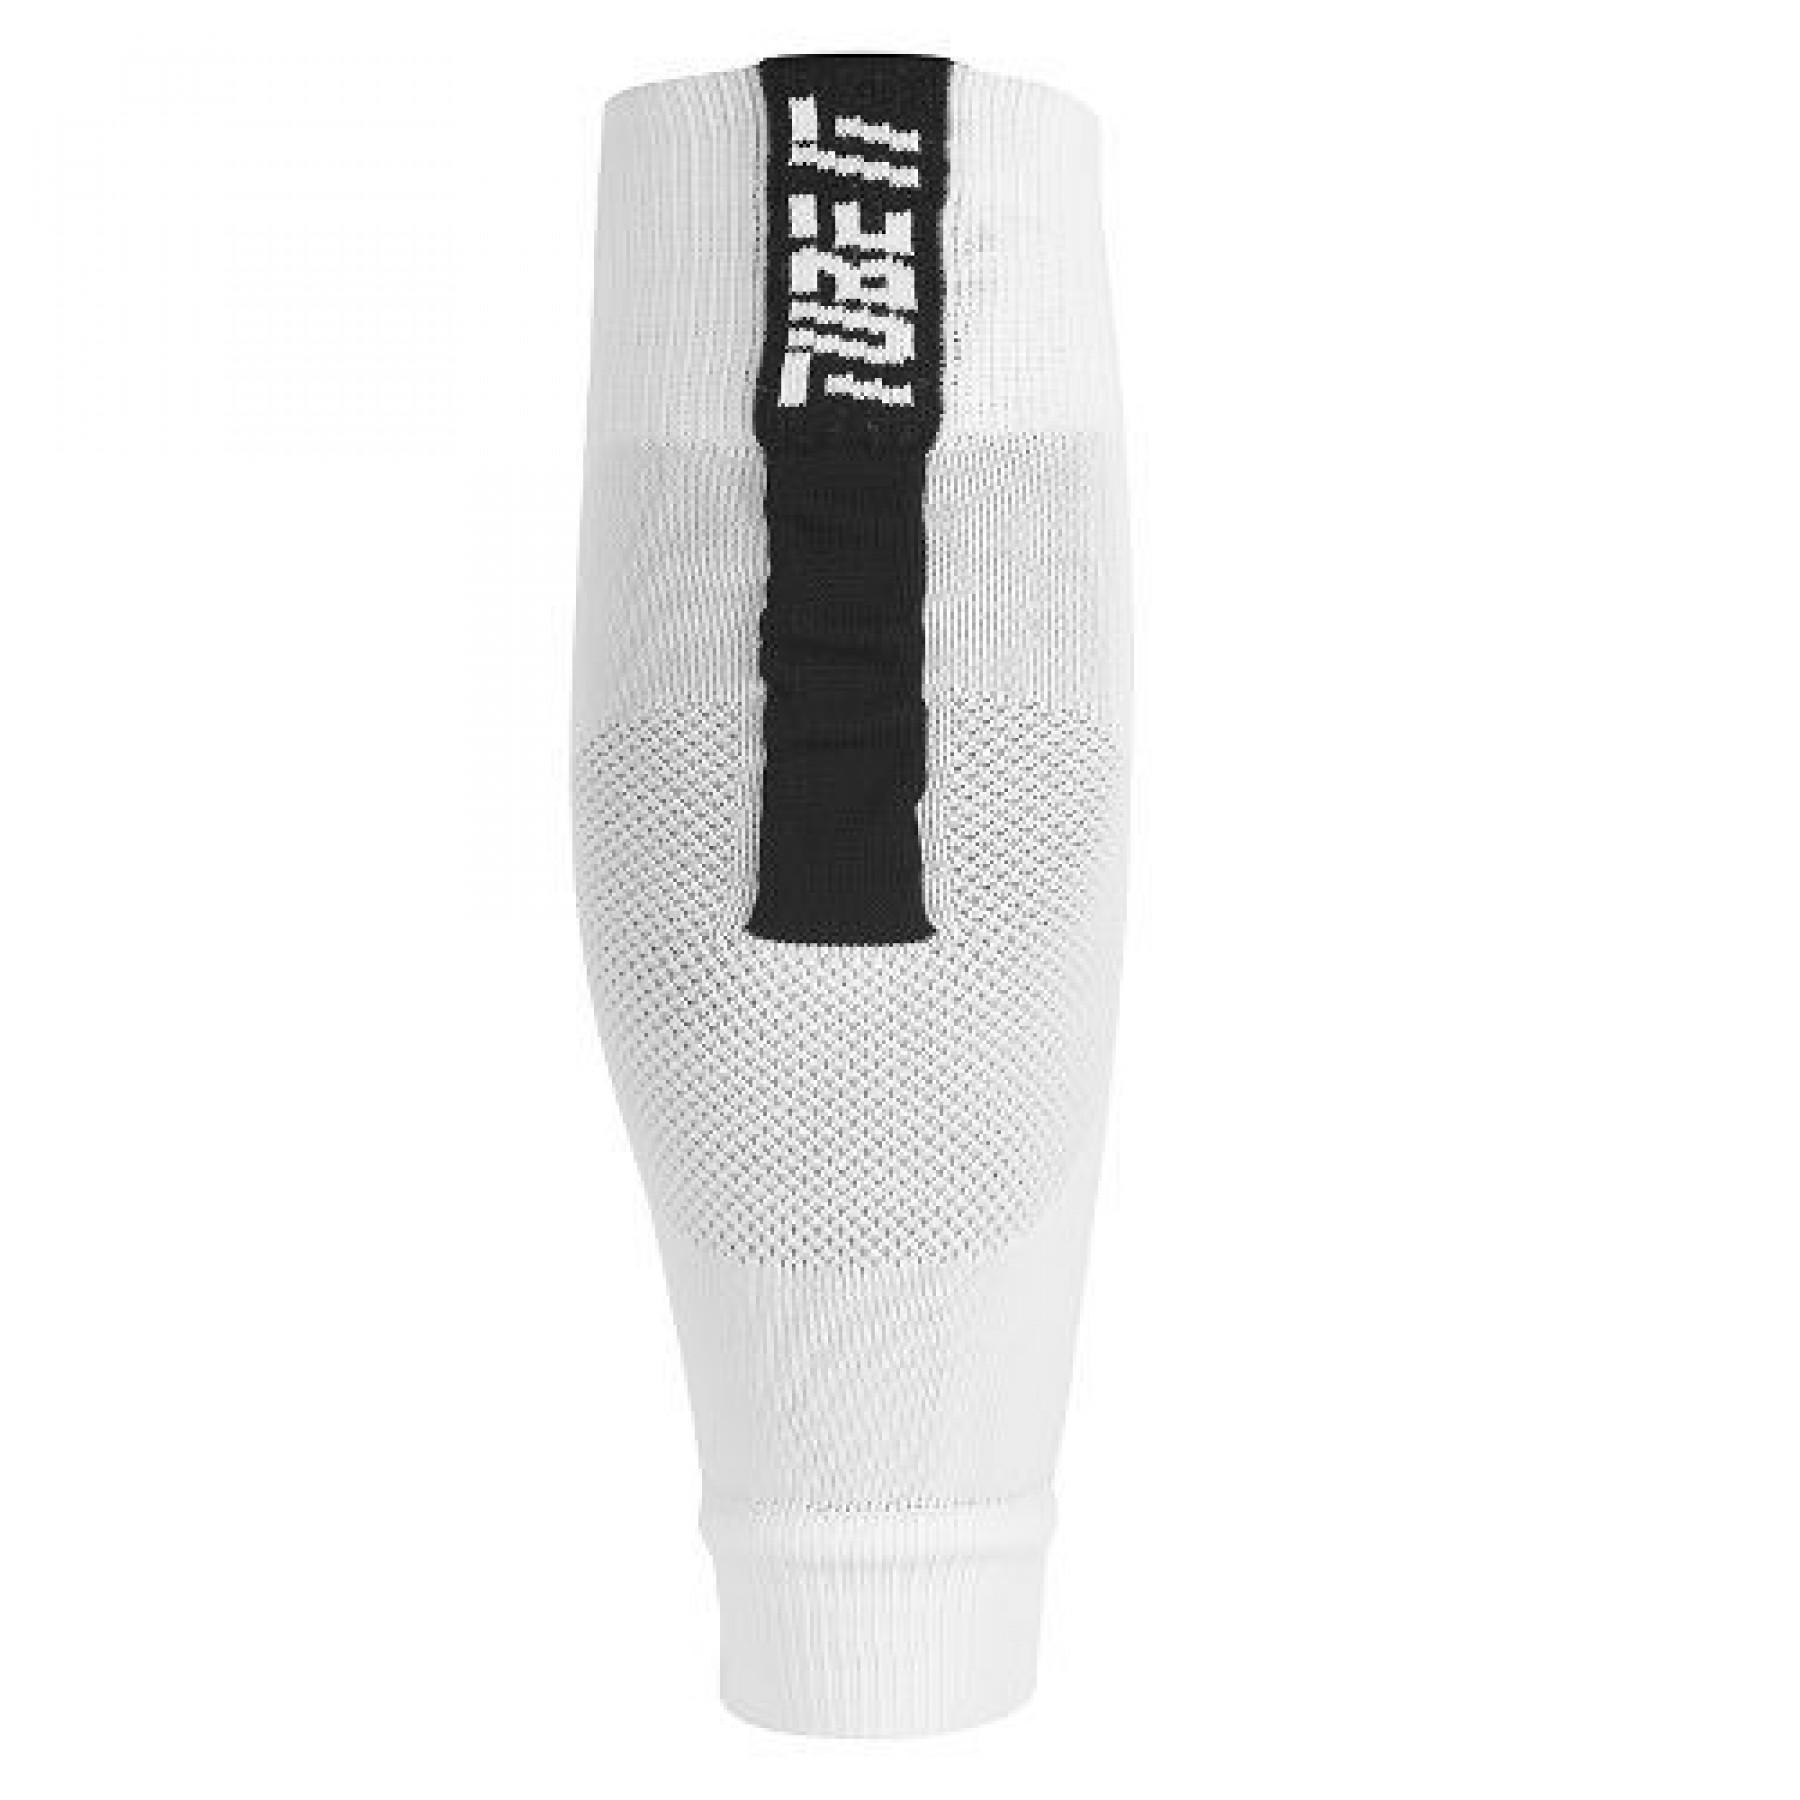 Leg compression sleeve Uhlsport Tube It